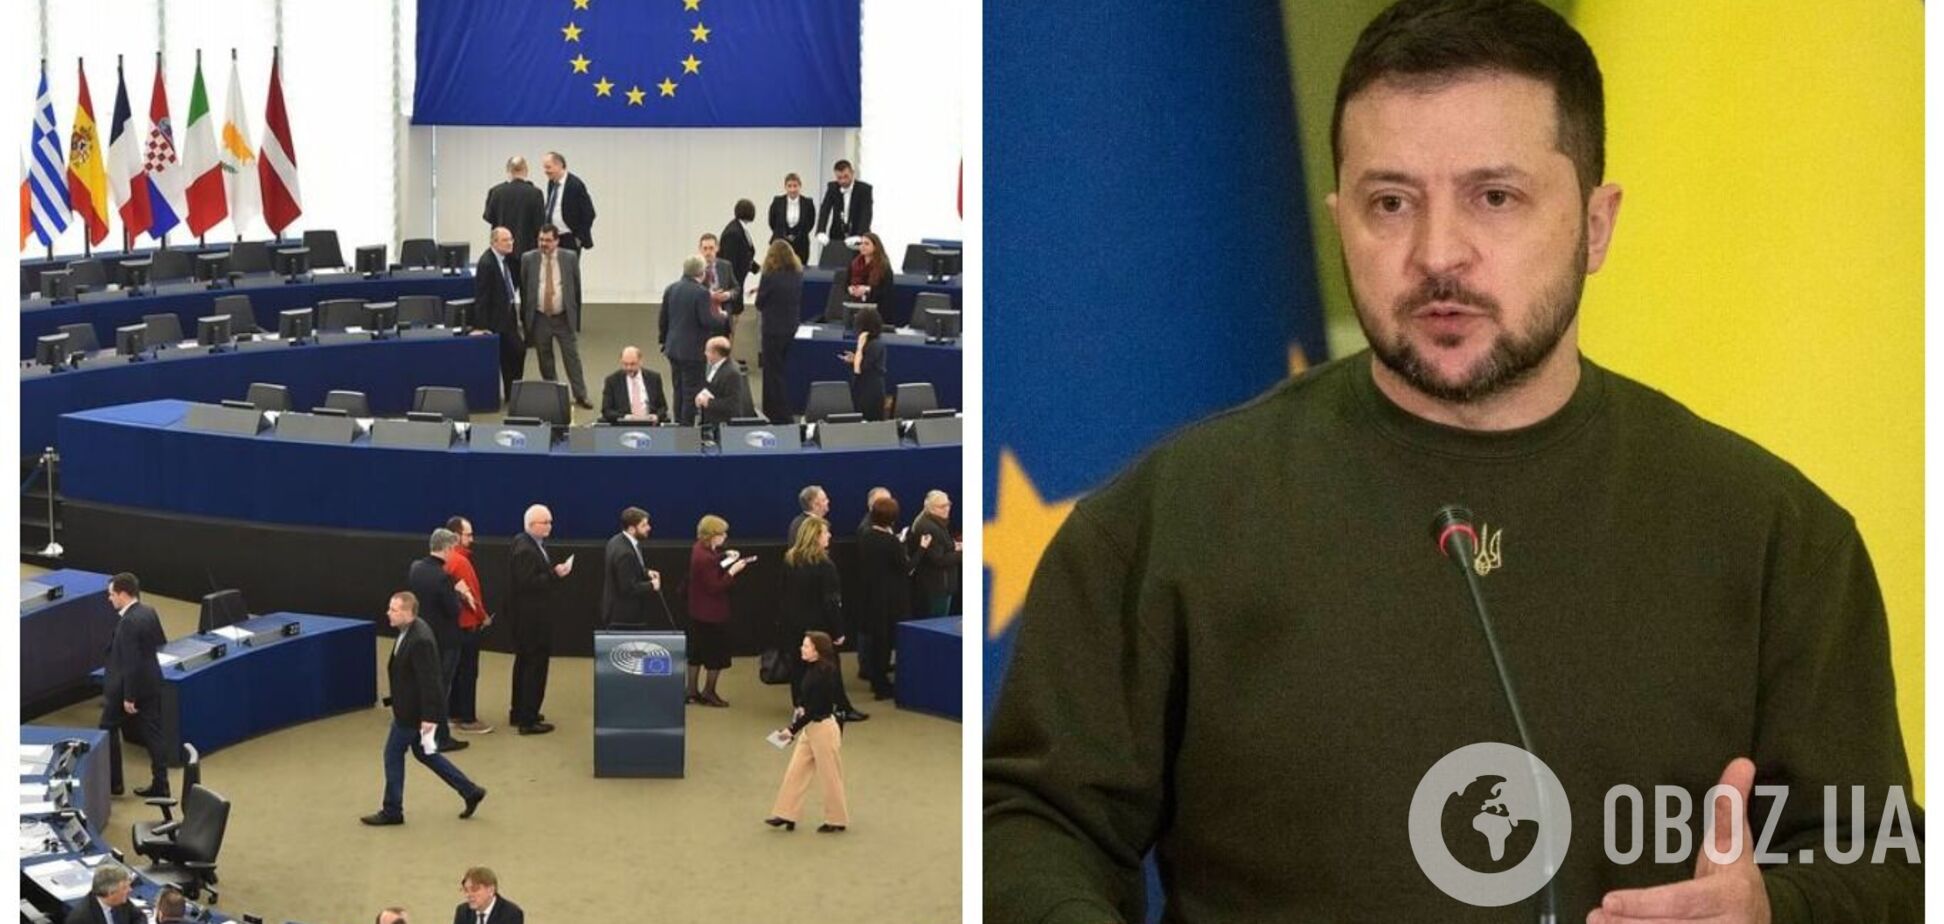 Зеленський прибув до Європарламенту, де має виступити із промовою. Фото, відео і всі подробиці